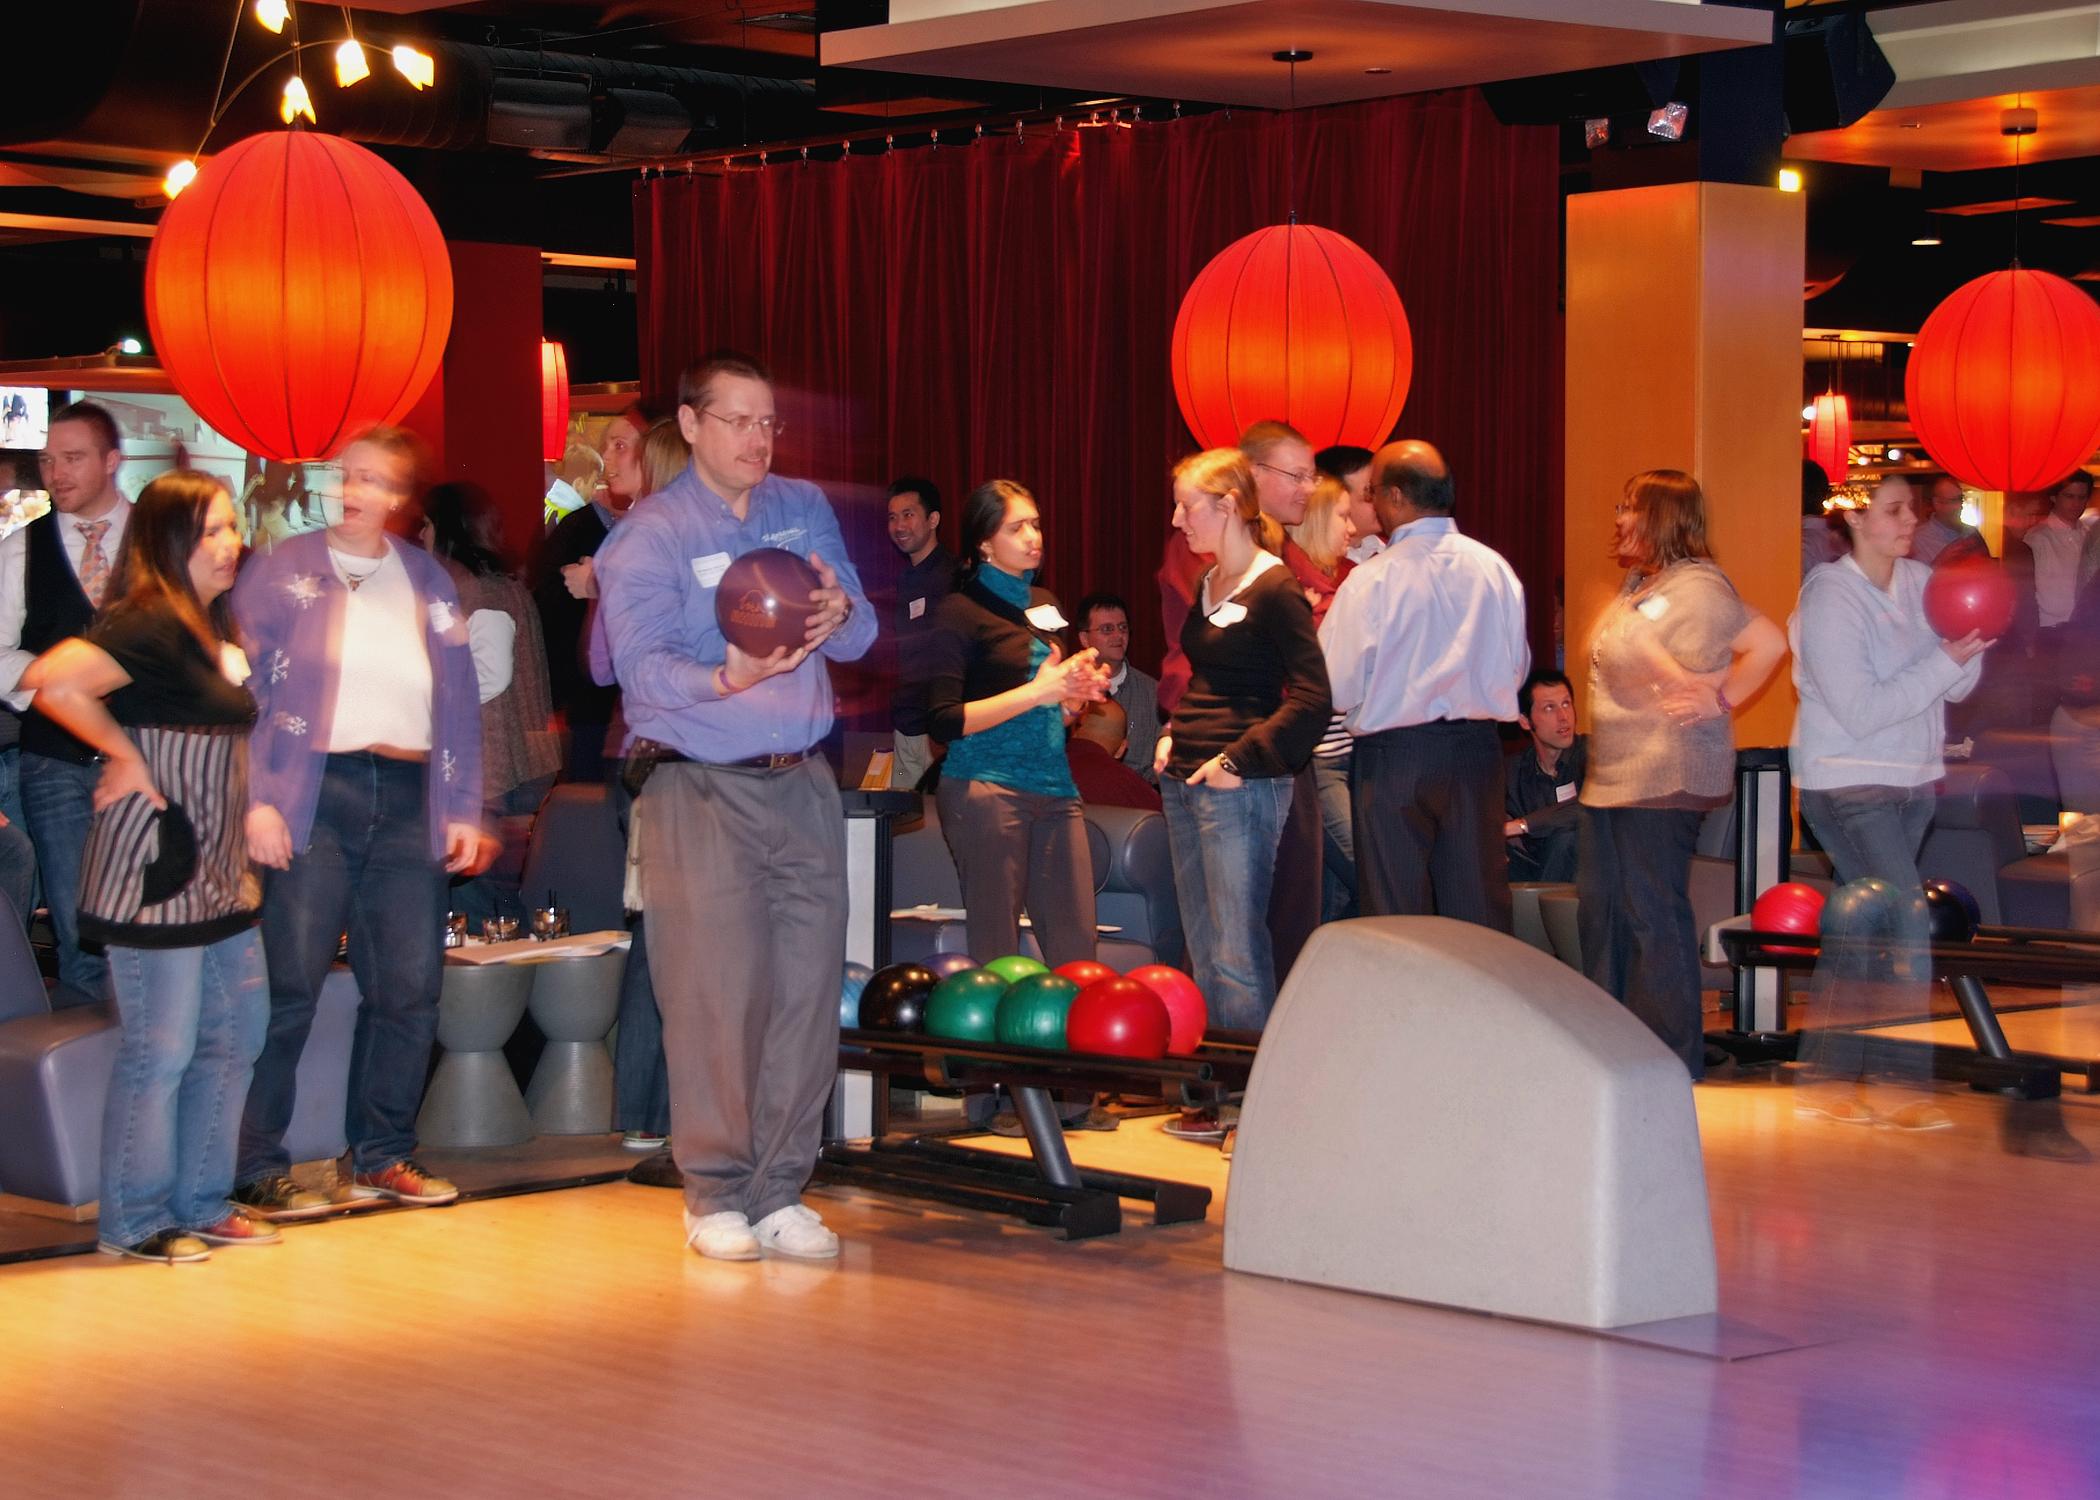 Bowling là một hoạt động thú vị, nhẹ nhàng và ai cũng có thể tham gia. Bowling đem lại tiếng cười sảng khoải trên nền nhạc sôi động, phù hợp với những sự kiến lớn của doanh nghiệp, nhất là các dịp cuối năm.